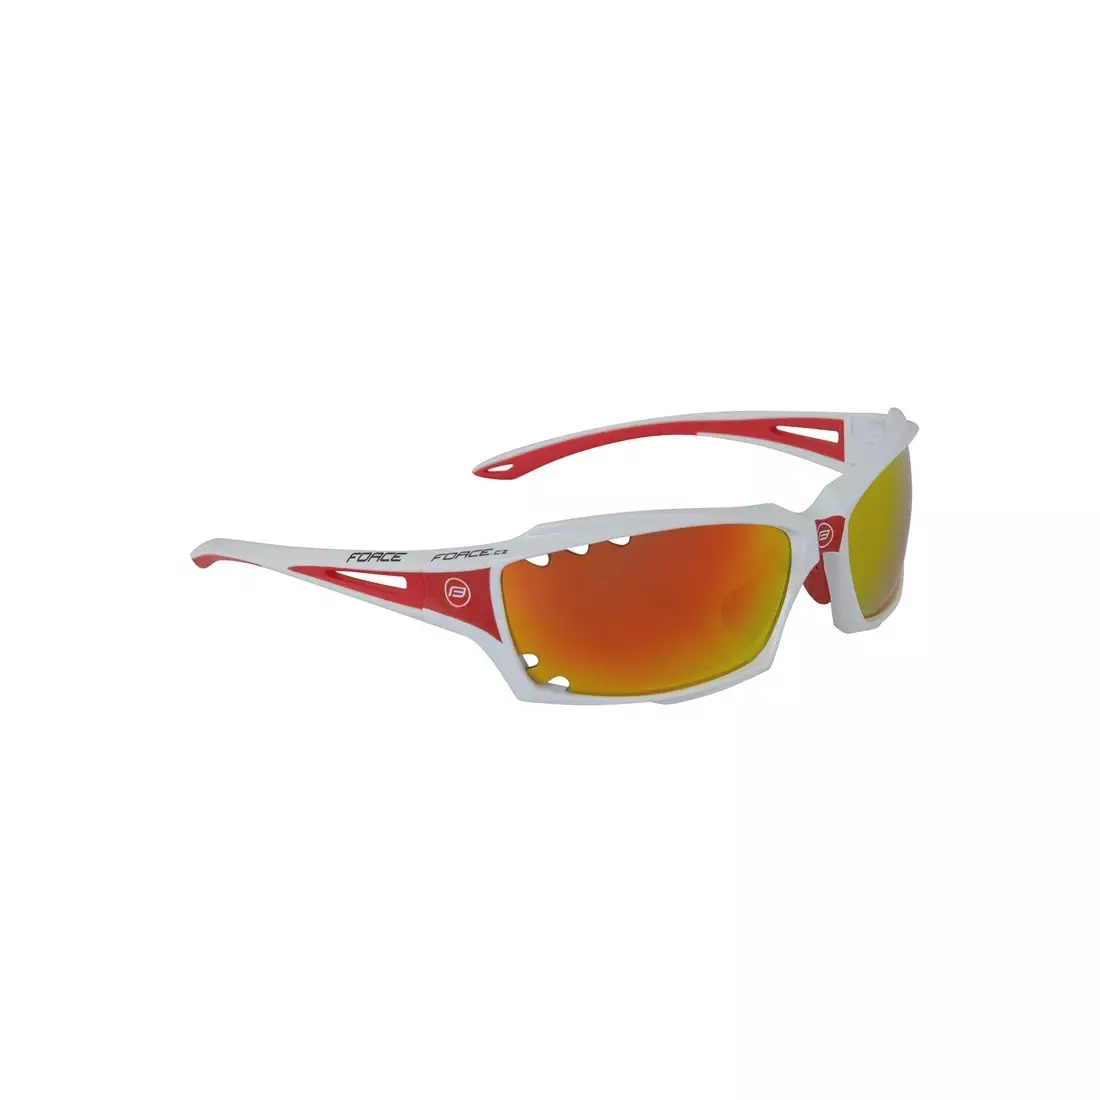 FORCE VISION Fahrrad-/Sportbrille weiß und rot 90971 austauschbare Gläser